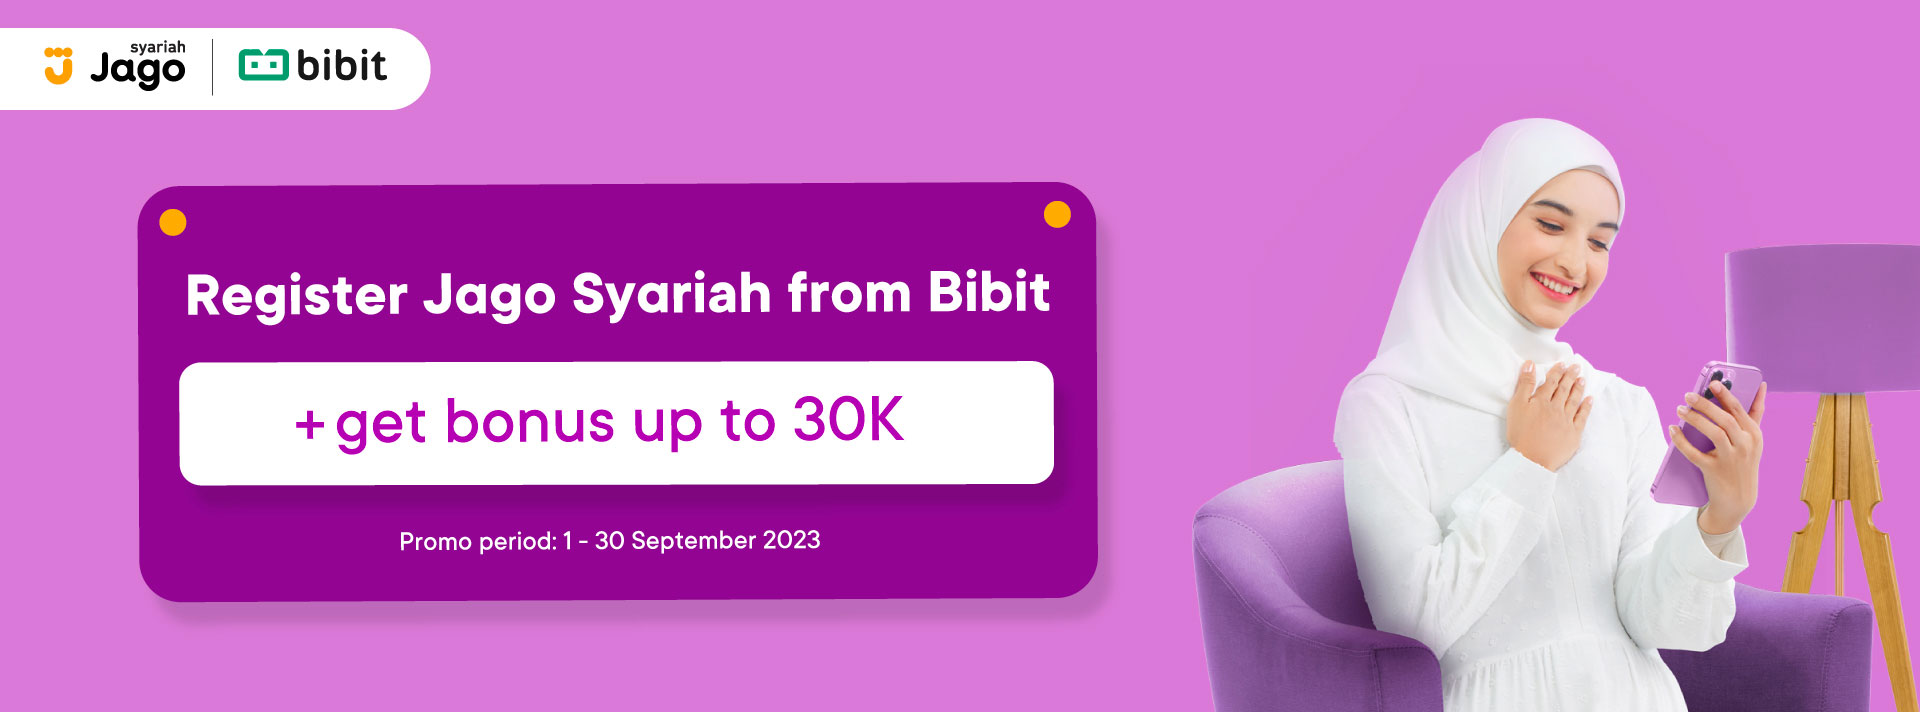 Register Jago from Bibit to get 40K bonus.